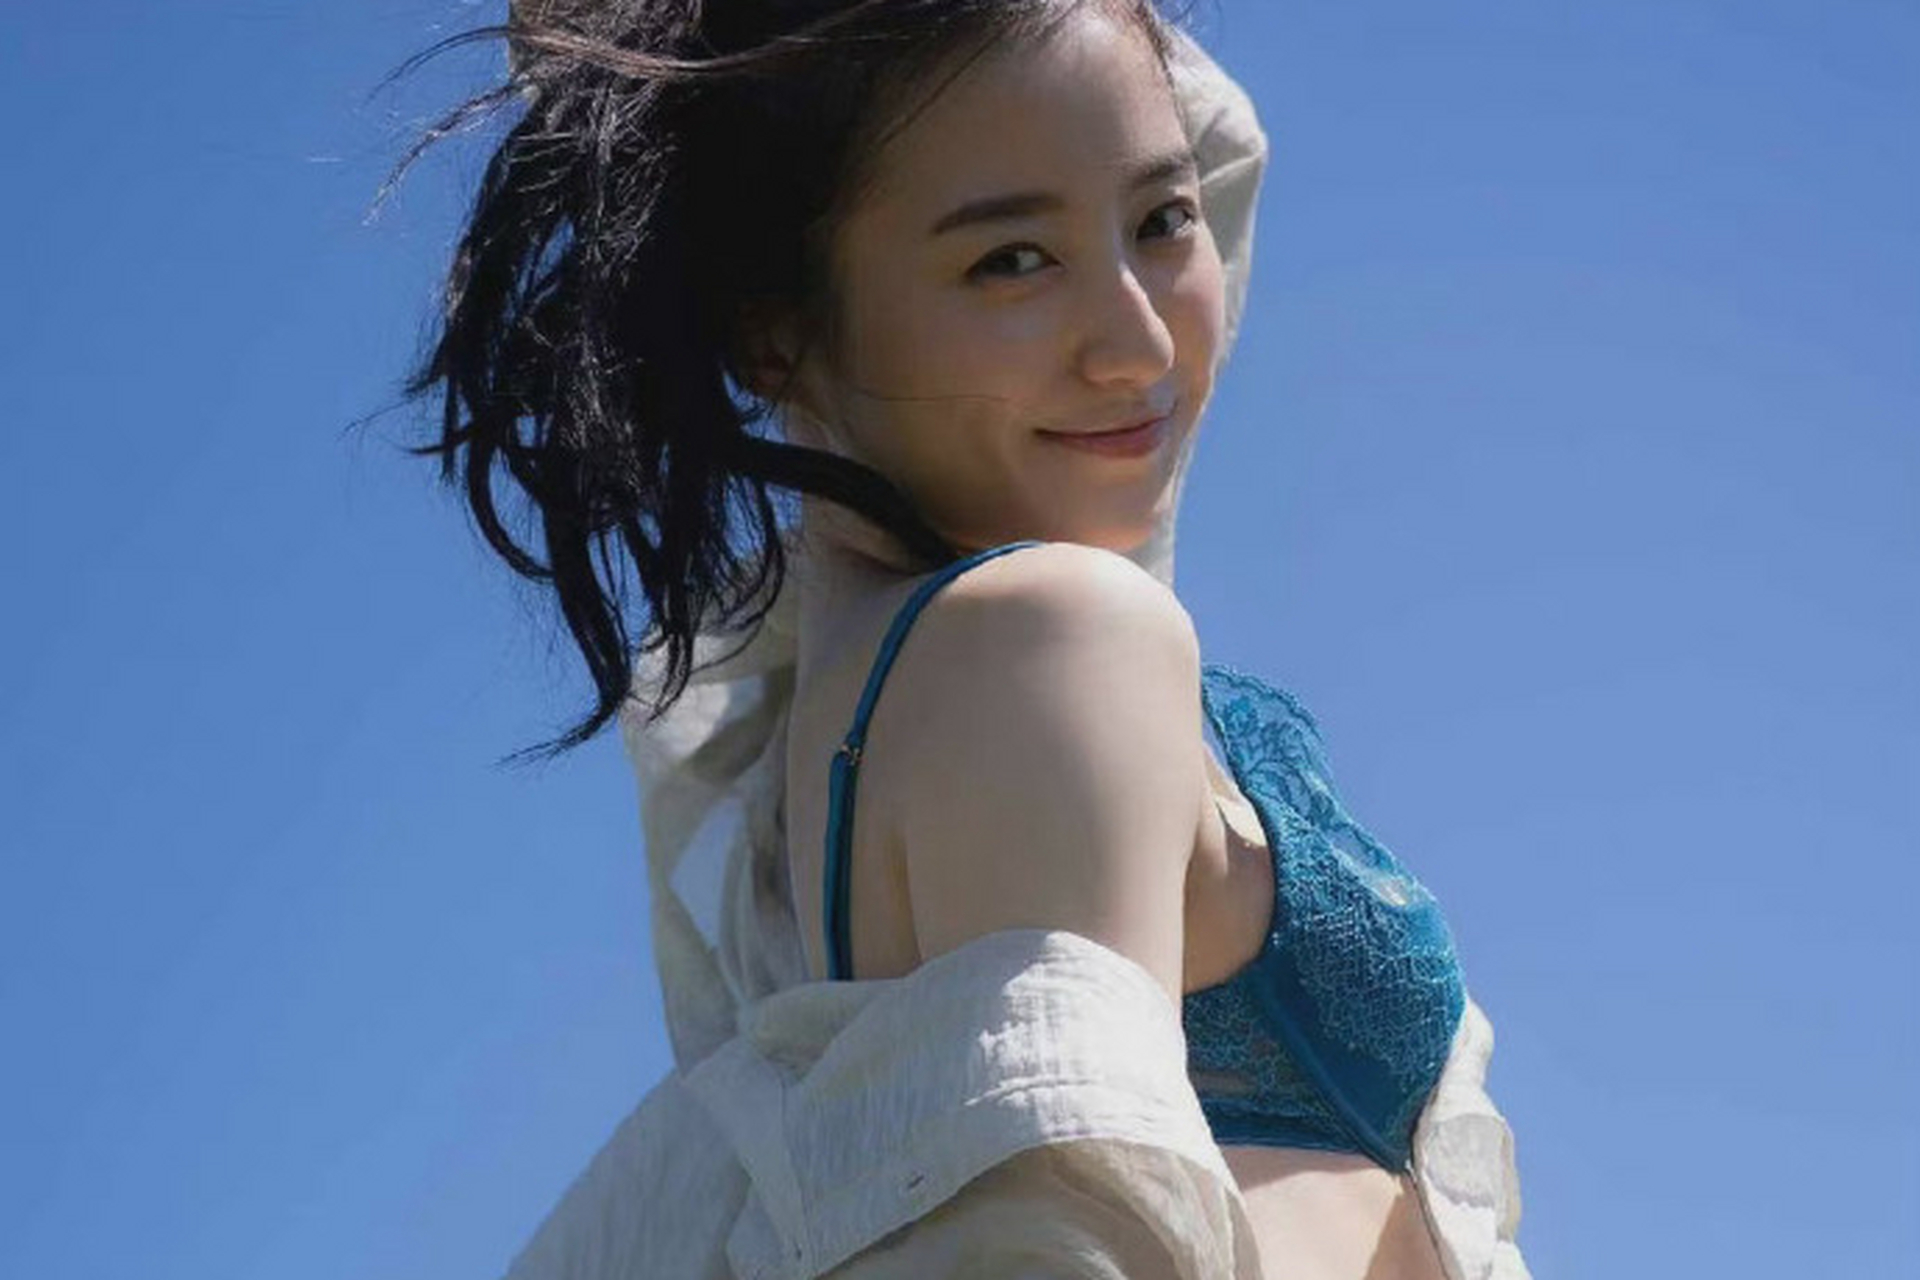 高田里穗是一位集美貌,演技和身材于一身的演员,她的美丽令人惊叹